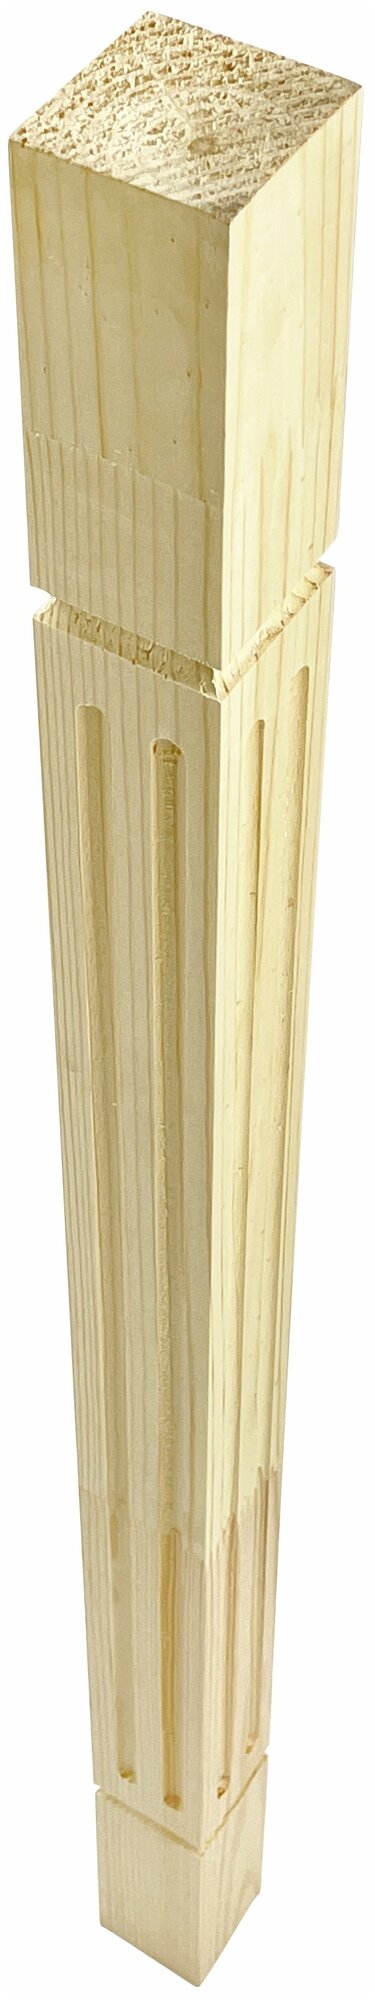 Набор 4 балясины деревянные 900х50х50мм / сращенная / ограждение для лестницы балюстрада из сосны премиум АА модель 50AN29